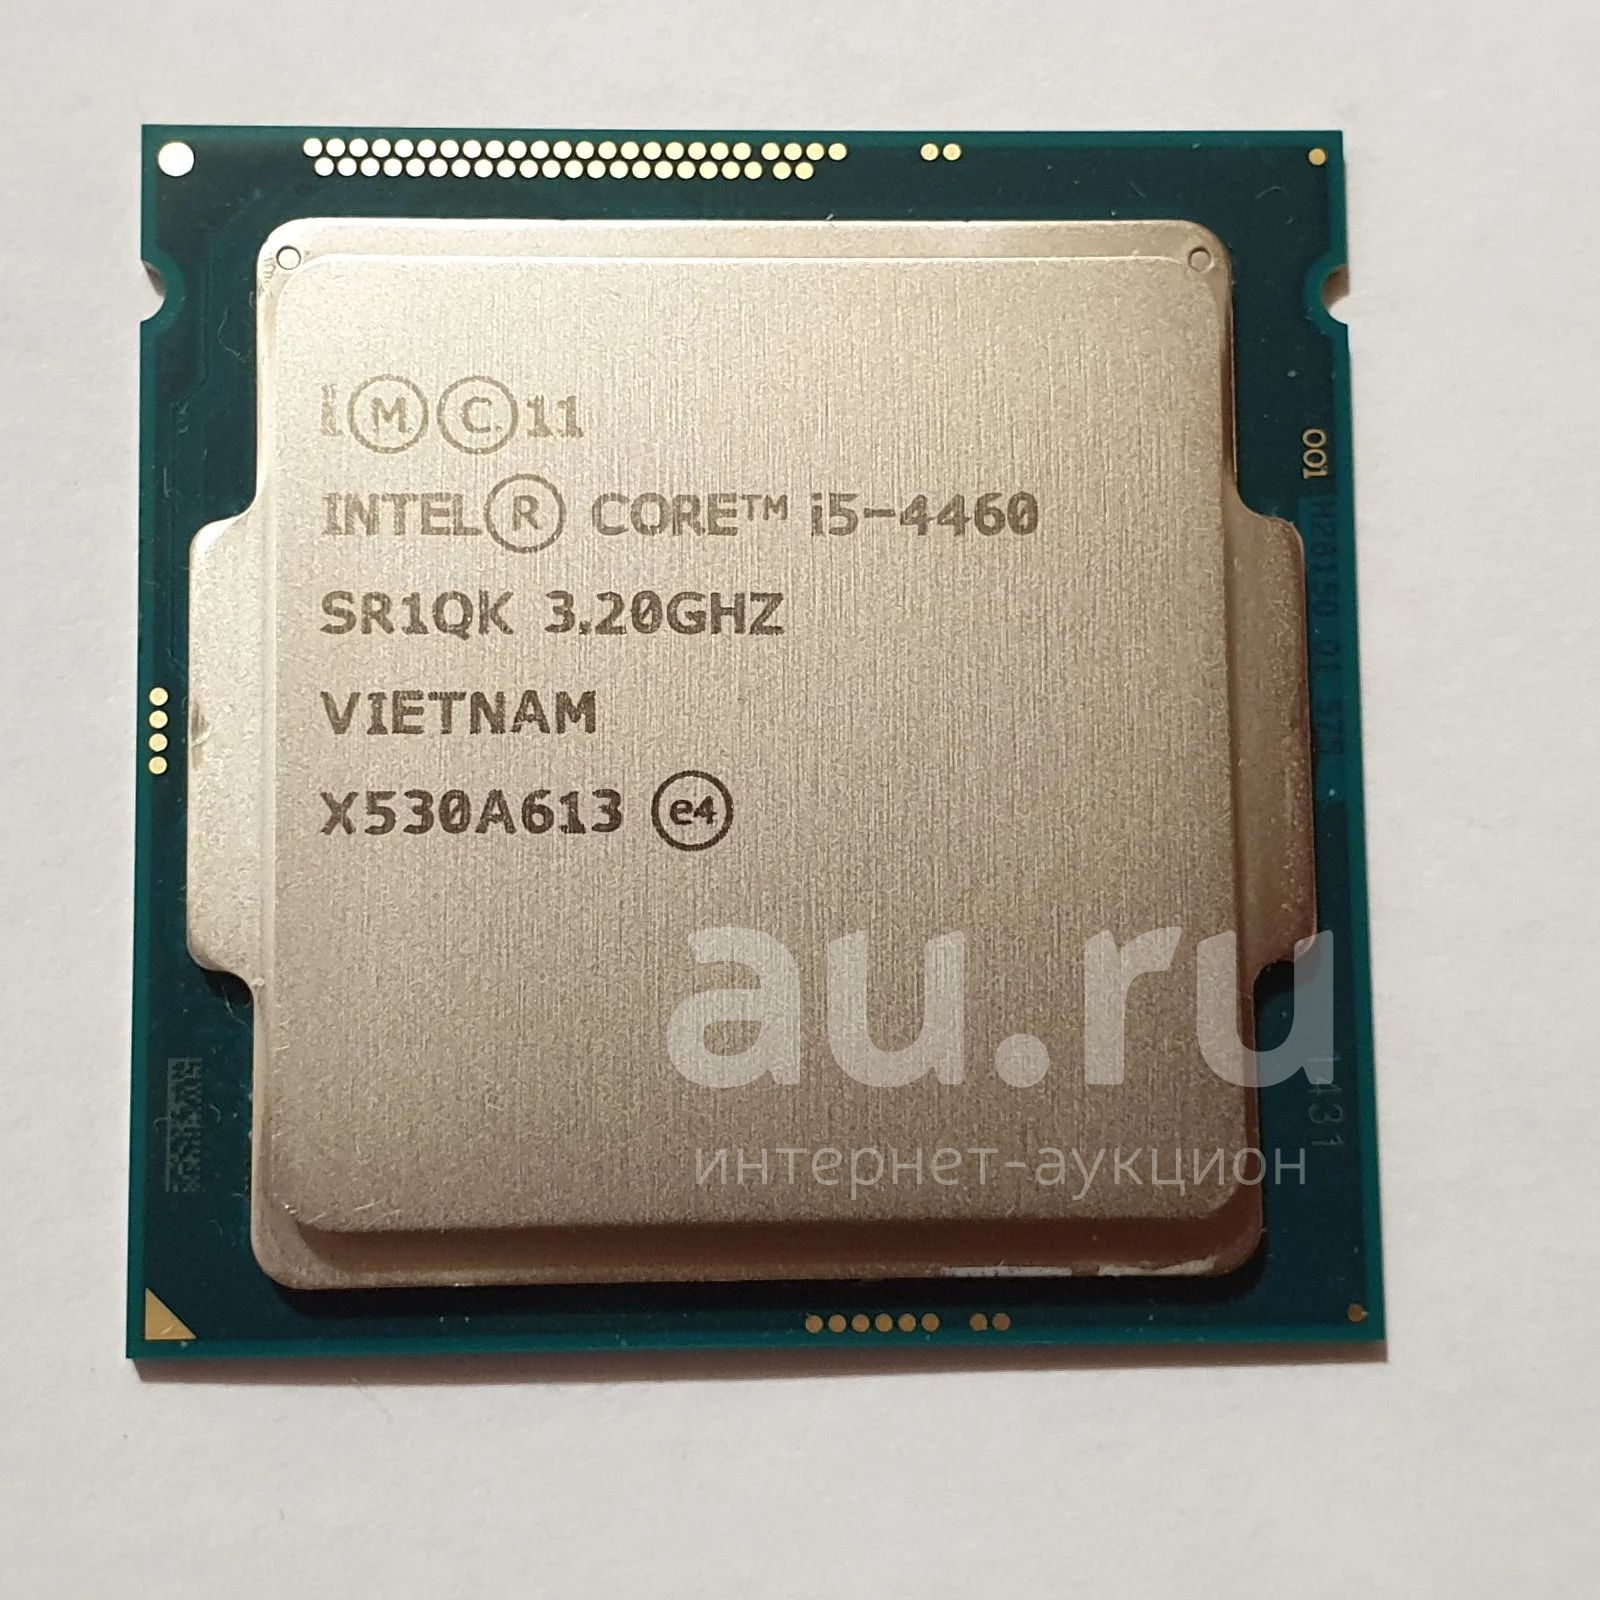 Интел i5 4460. Intel Core i5-4460. Intel Core i5-4460 @ 3.1 GHZ. I5 4460. Intel Core i5-4460 logo.